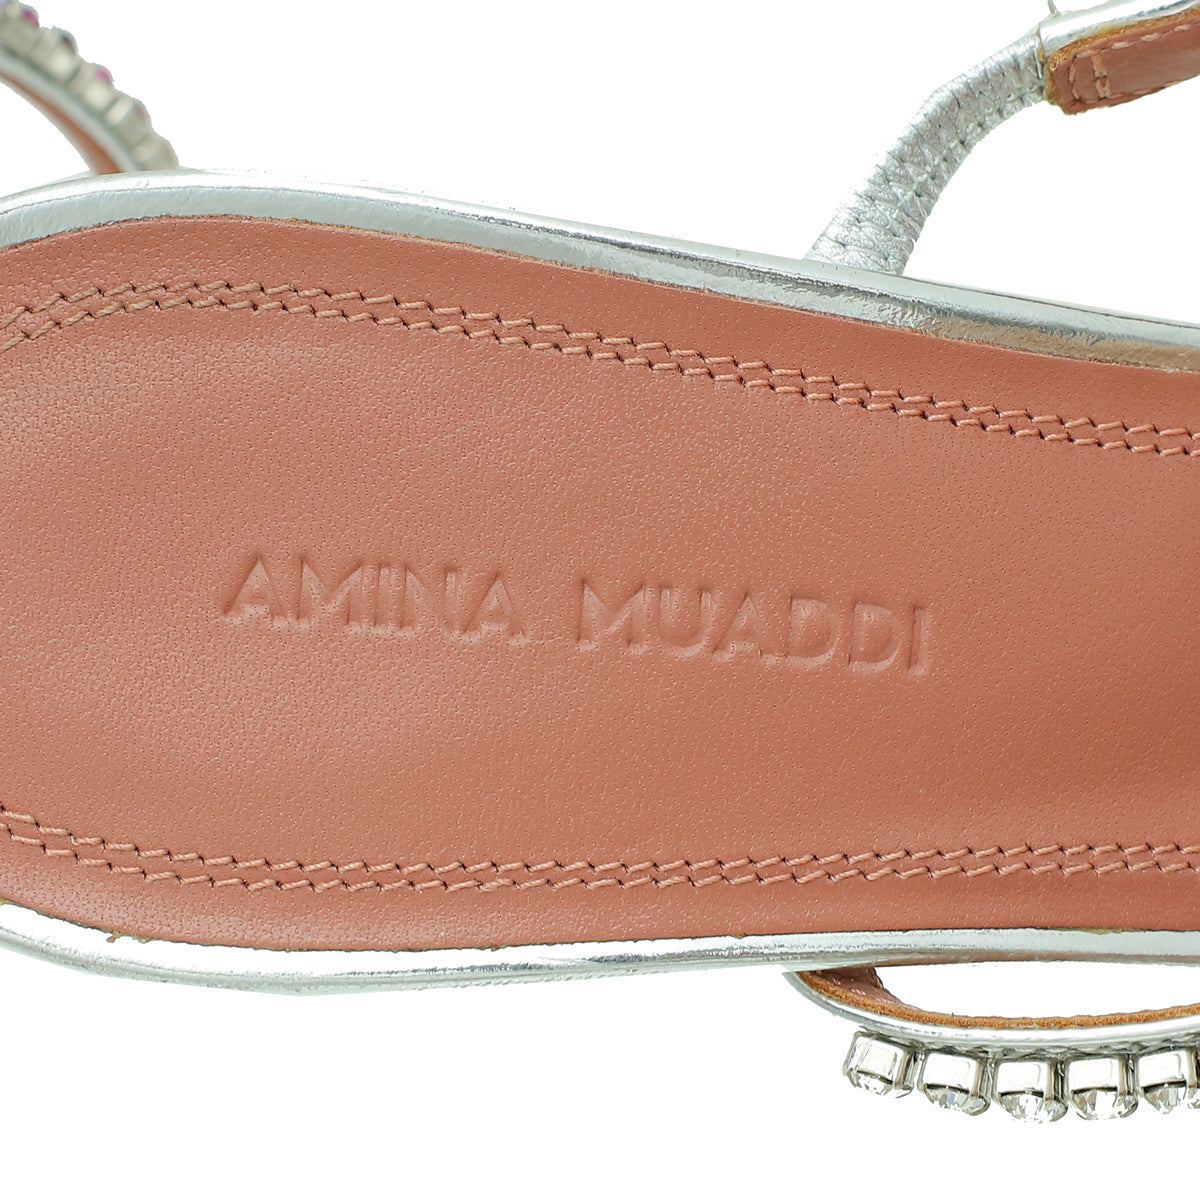 Amina Muaddi Metallic Silver Gilda 95 Ankle Strap Sandals 37